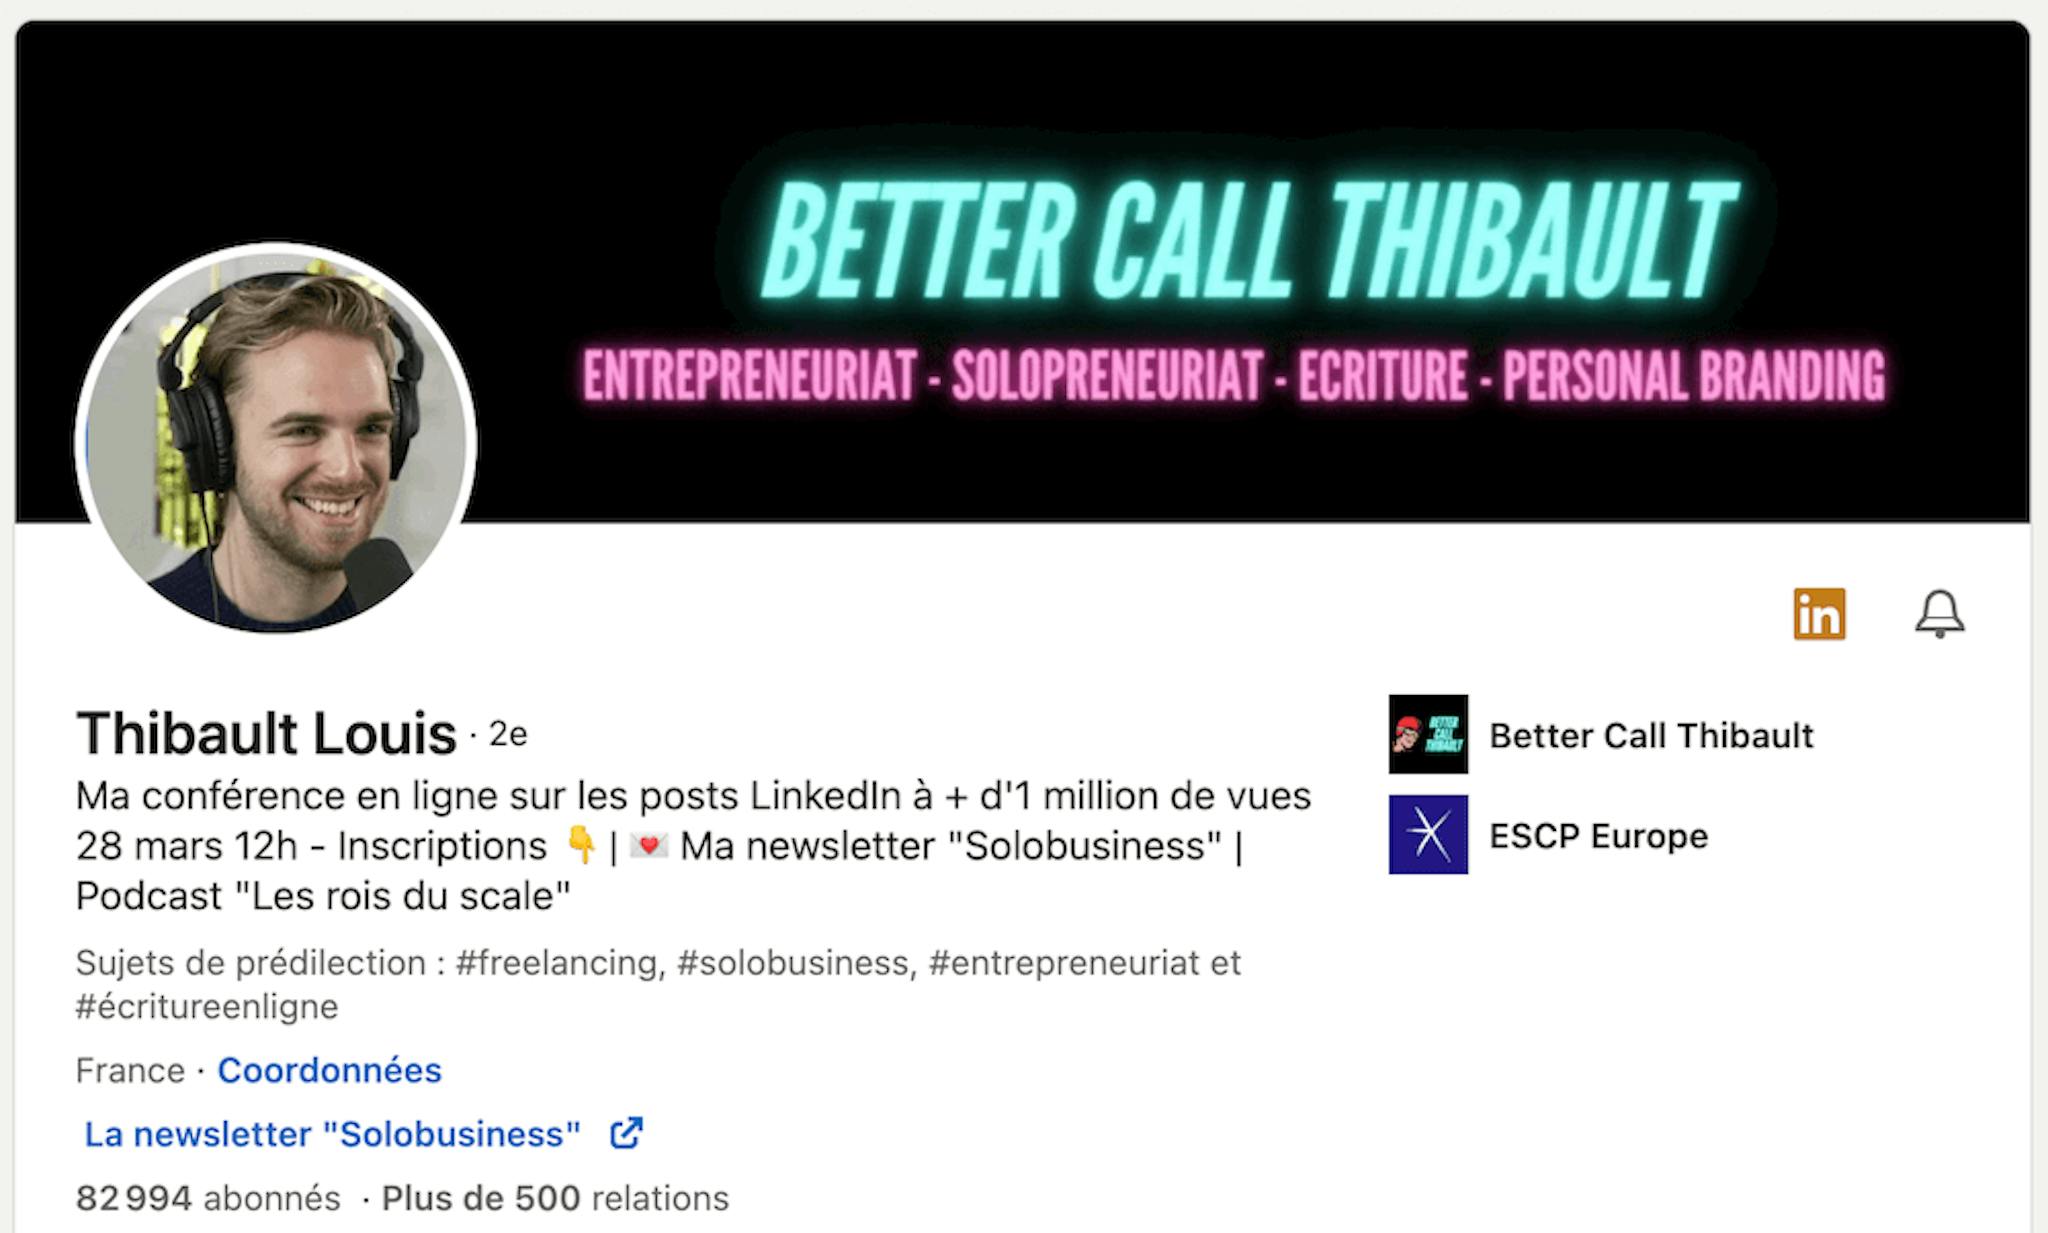 Un aperçu du profil Linkedin de Thibault Louis. En quelques mois, il a accumulé plus de 40,000 abonnés sur la plateforme.